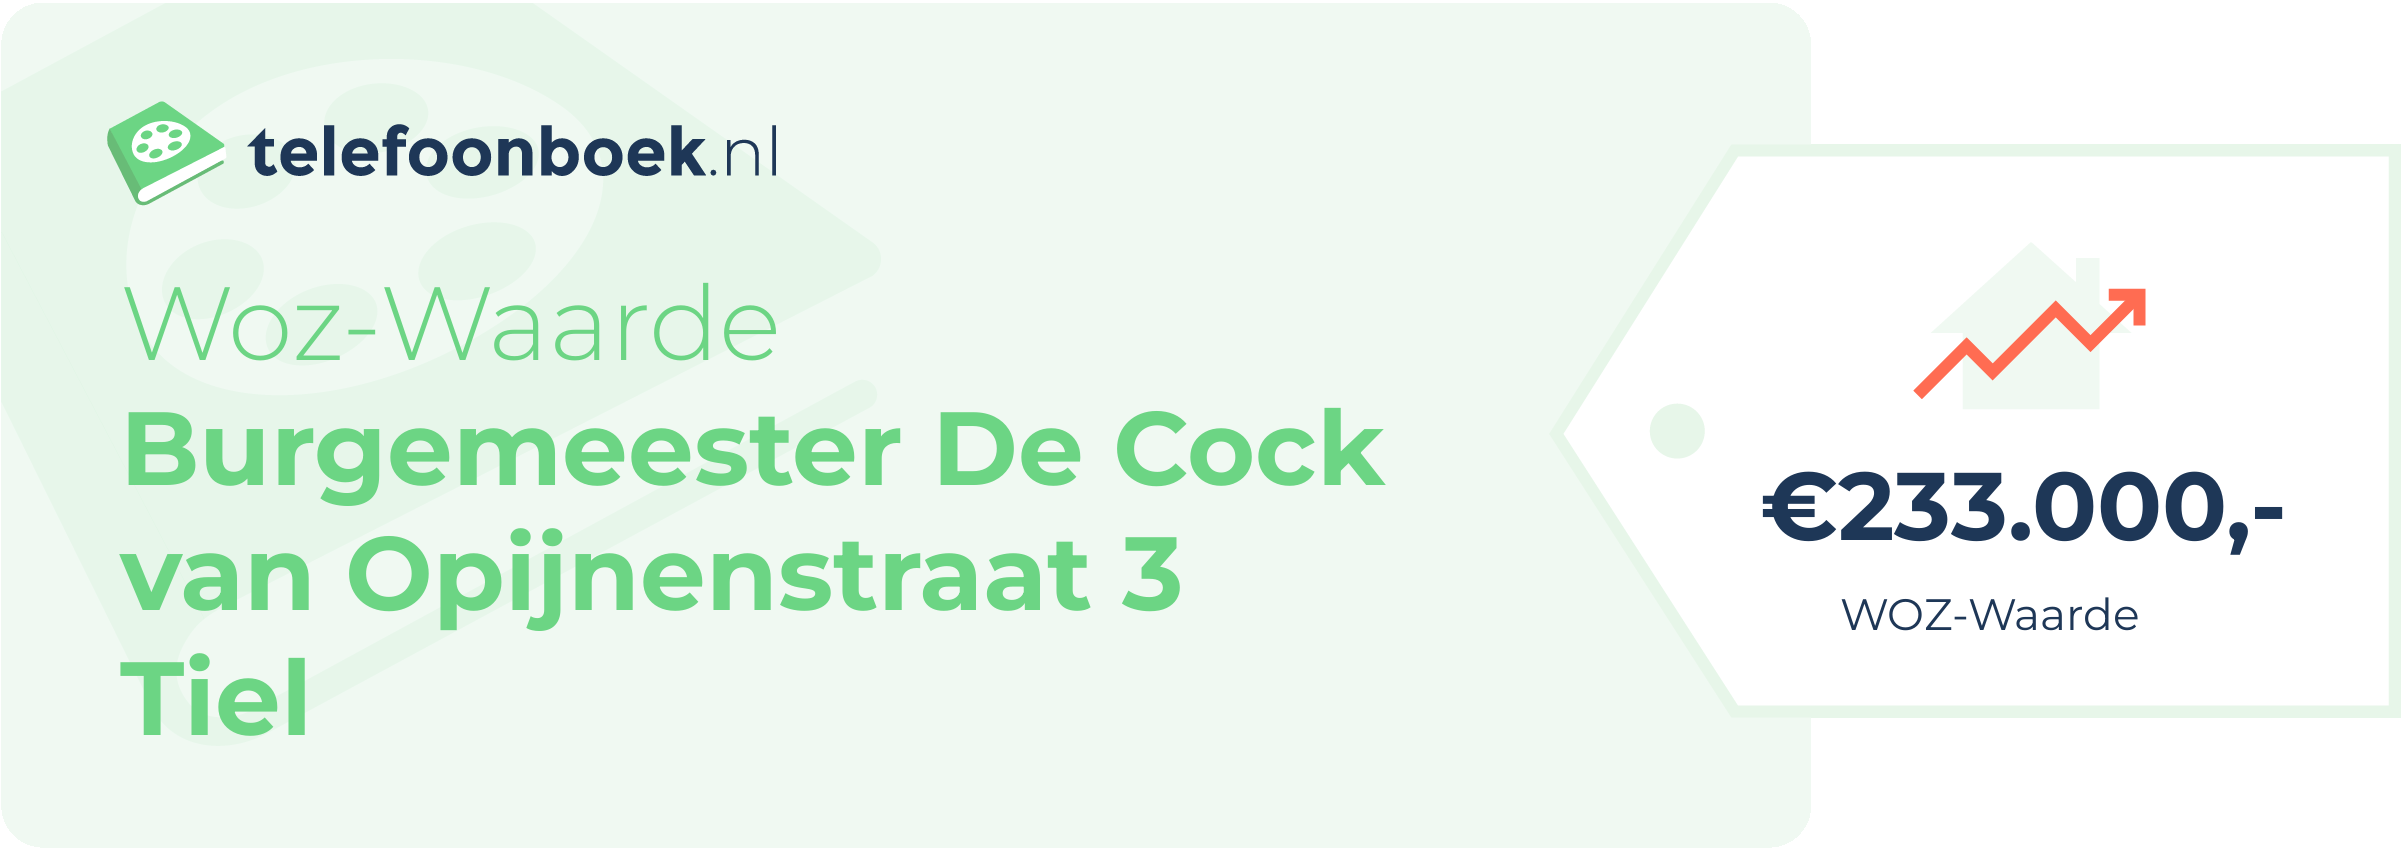 WOZ-waarde Burgemeester De Cock Van Opijnenstraat 3 Tiel